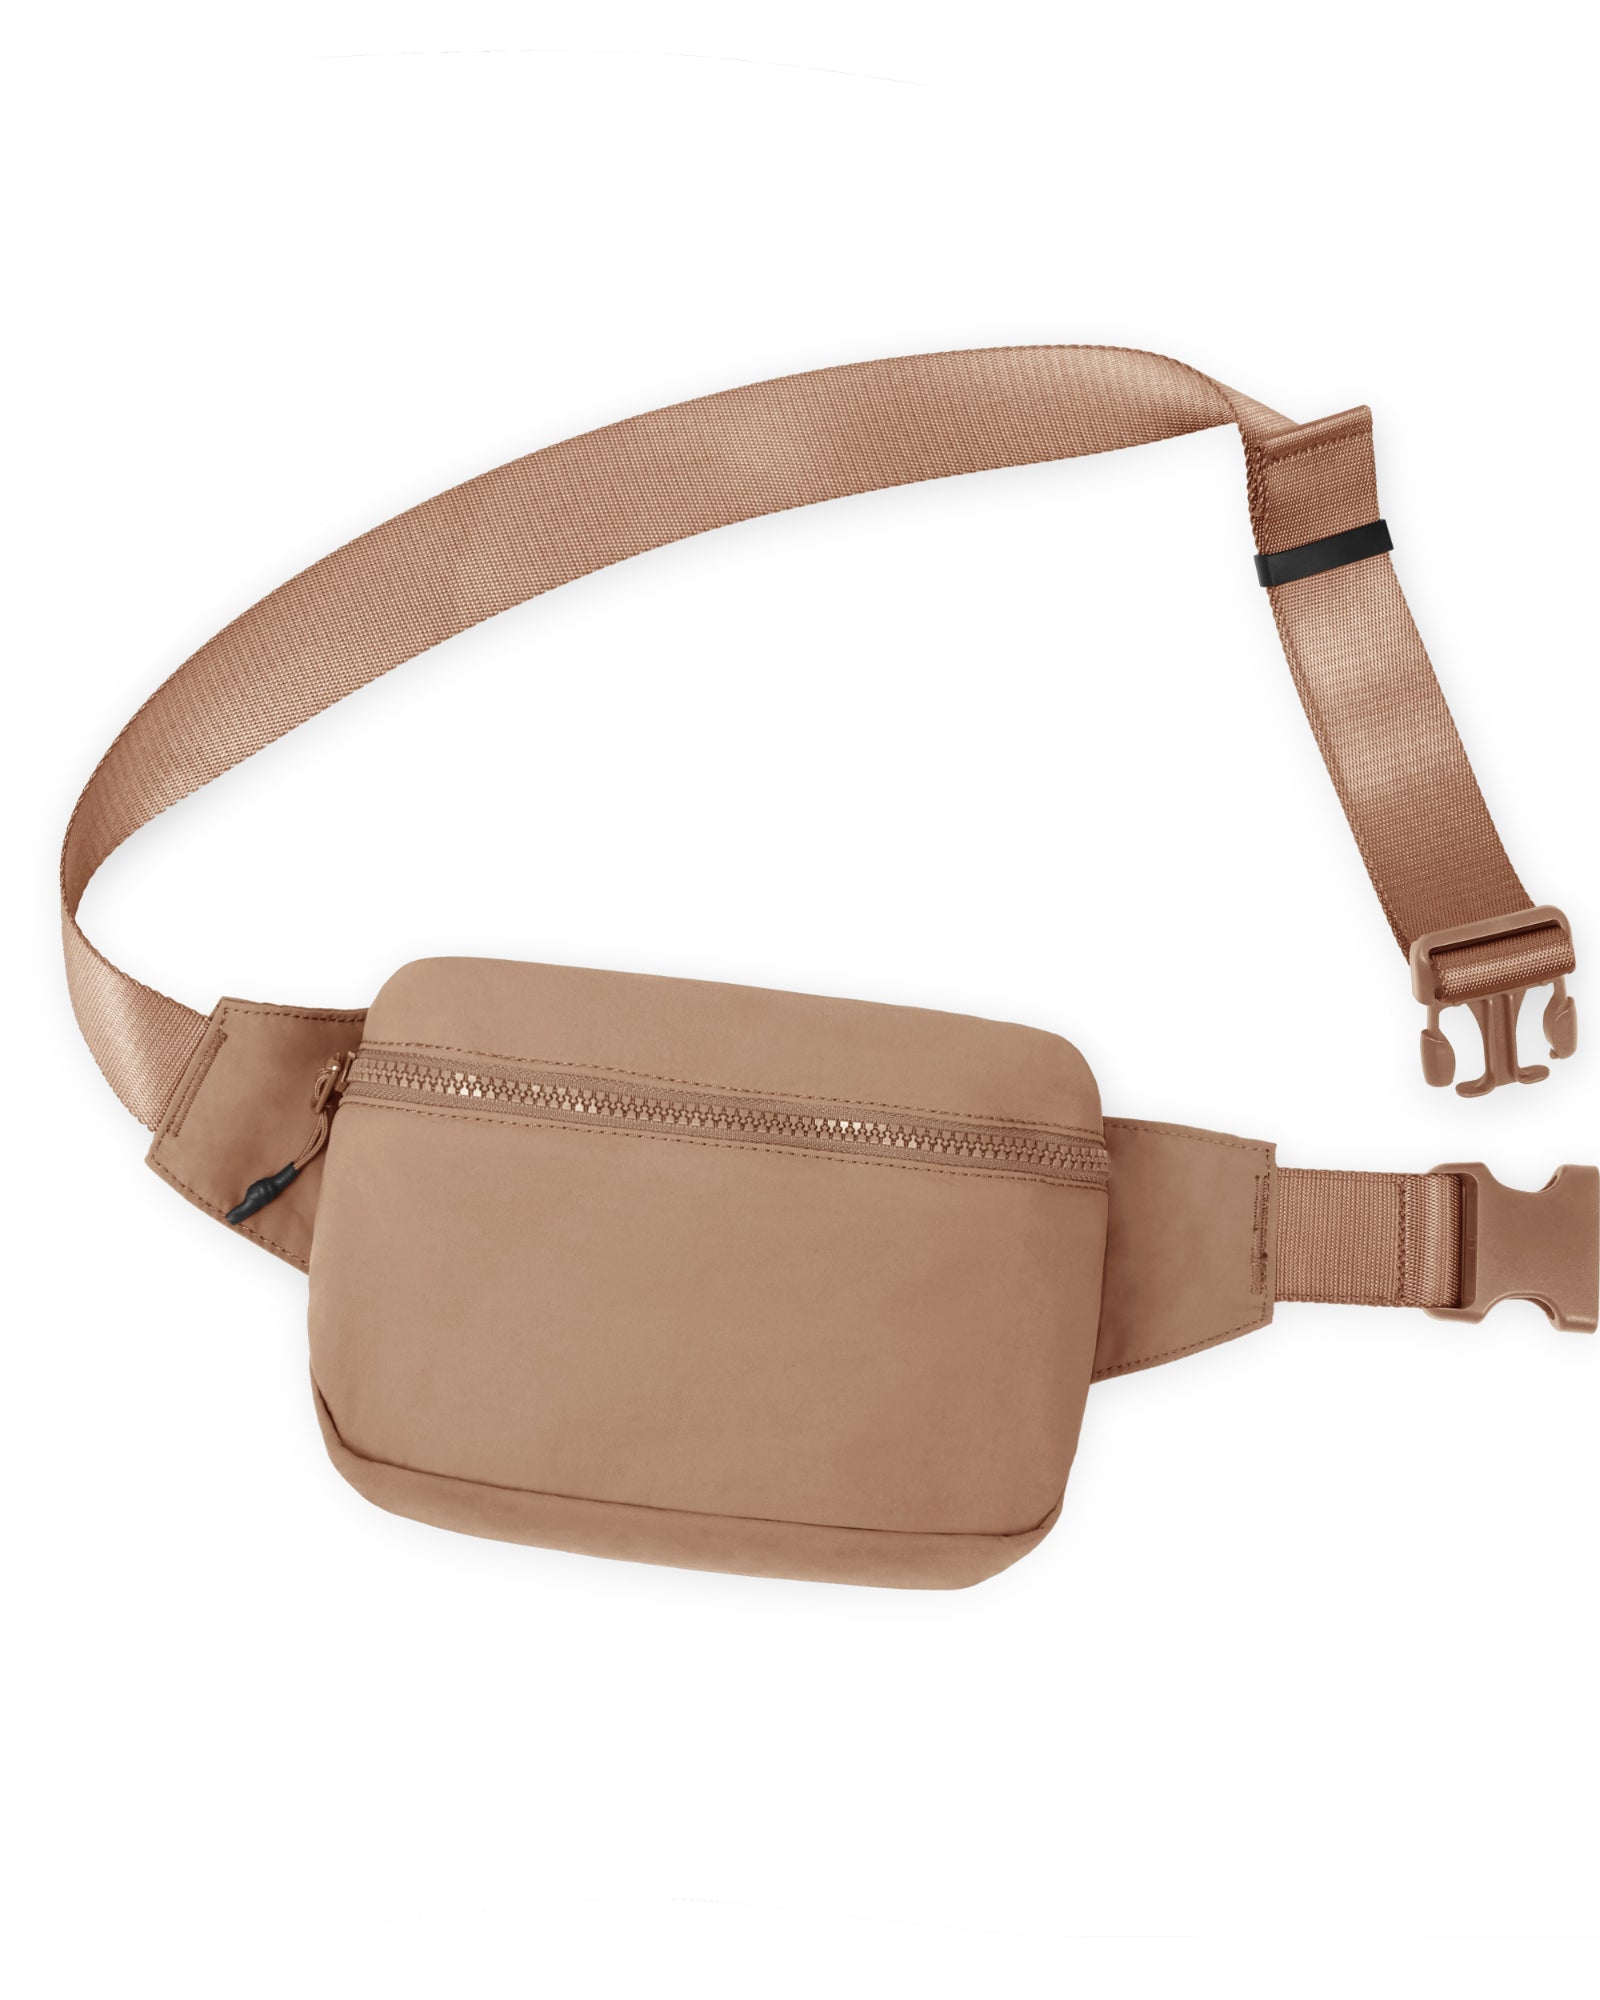 2L Belt Bag with Adjustable Strap Brown 8.5" x 5" x 2" - ododos